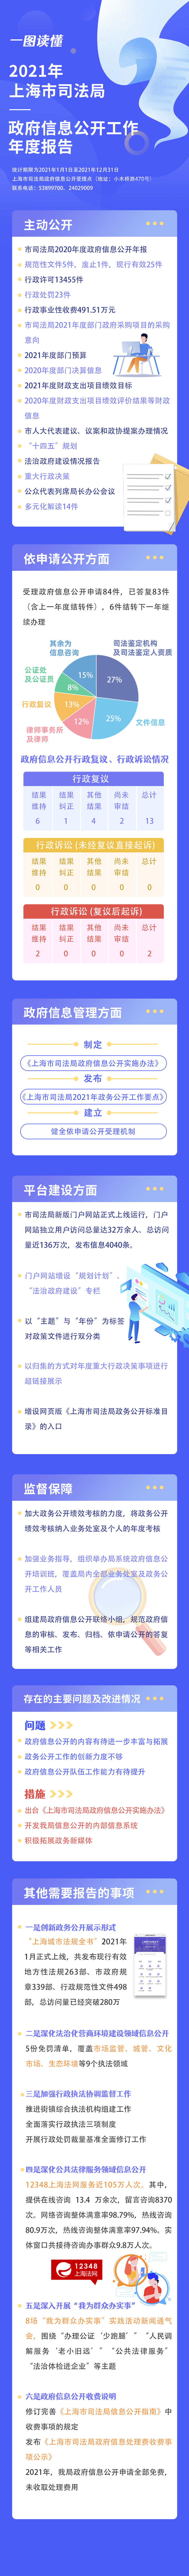 一图读懂《2021年上海市司法局政府信息公开工作年度报告》.jpg